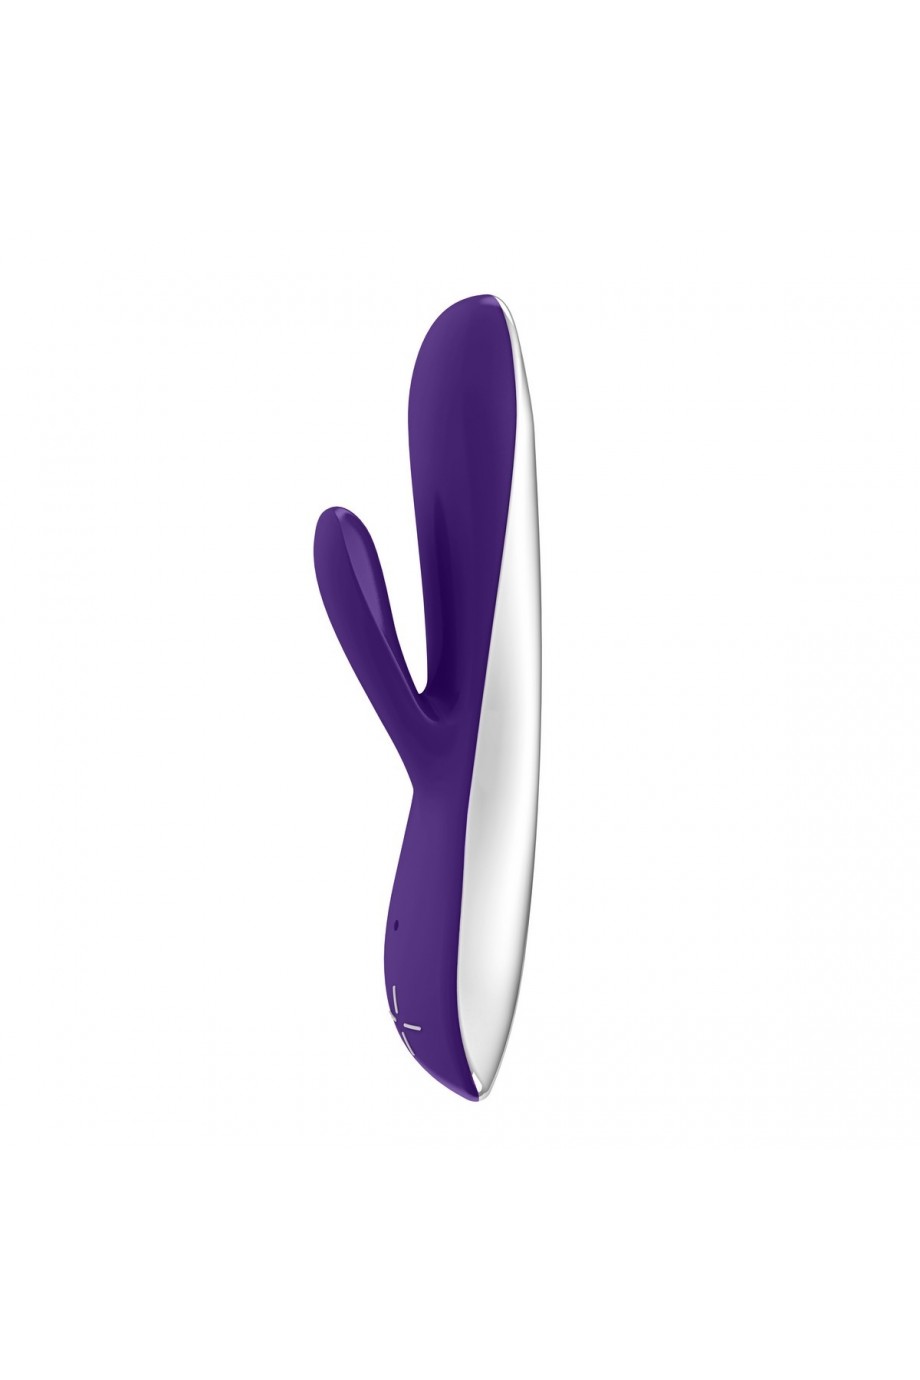 Вибратор OVO rabbit перезаряжаемый силикон, фиолетовый, 19,5 см